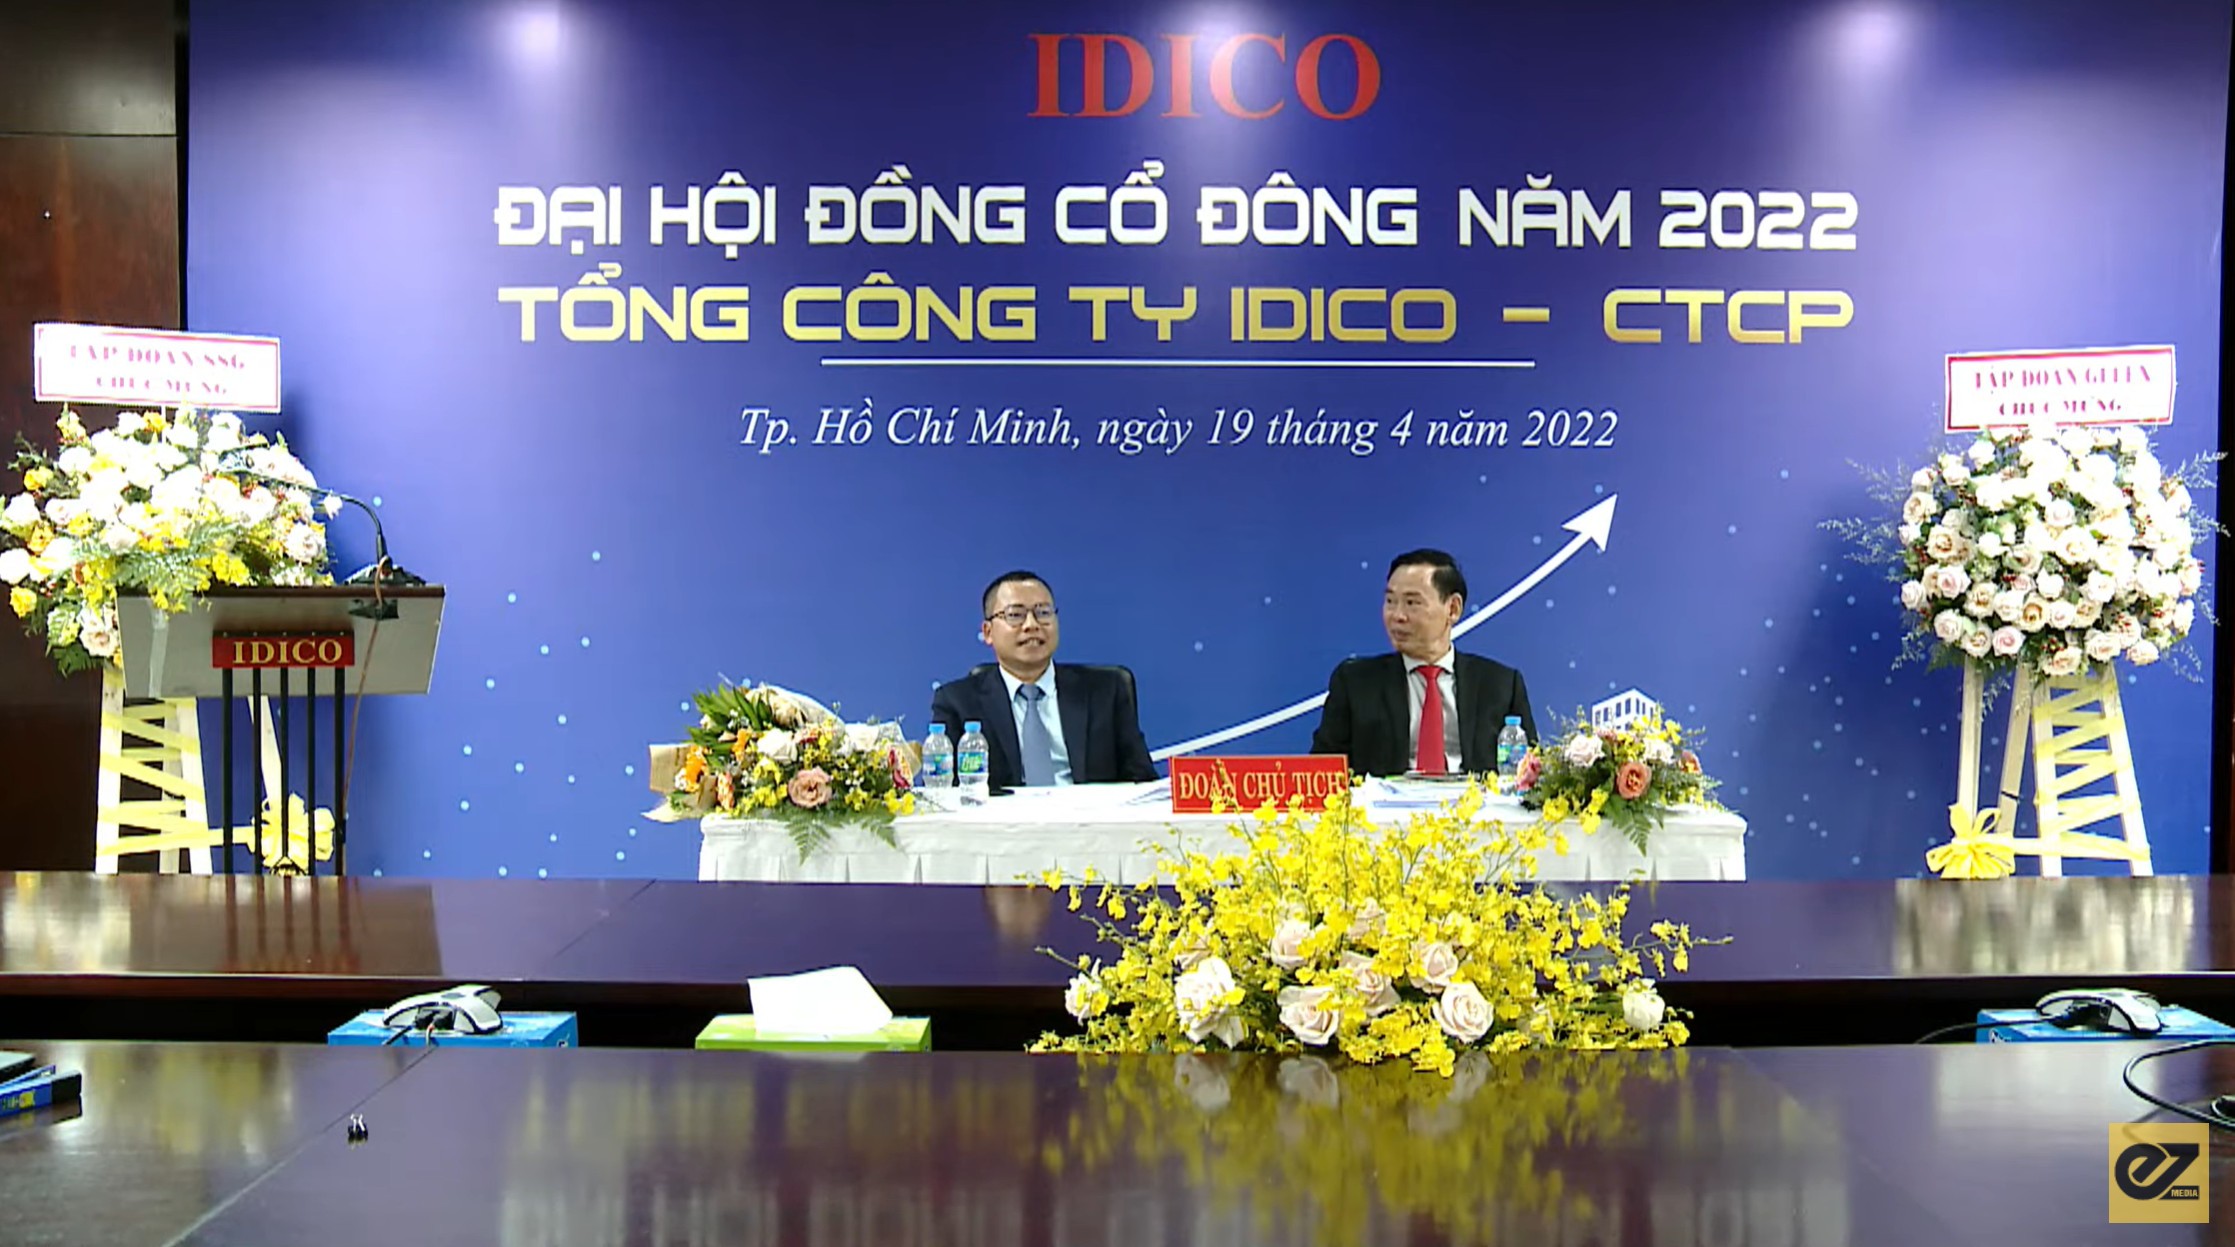 
Phương châm hoạt động và Chính sách phát triển của IDICO
